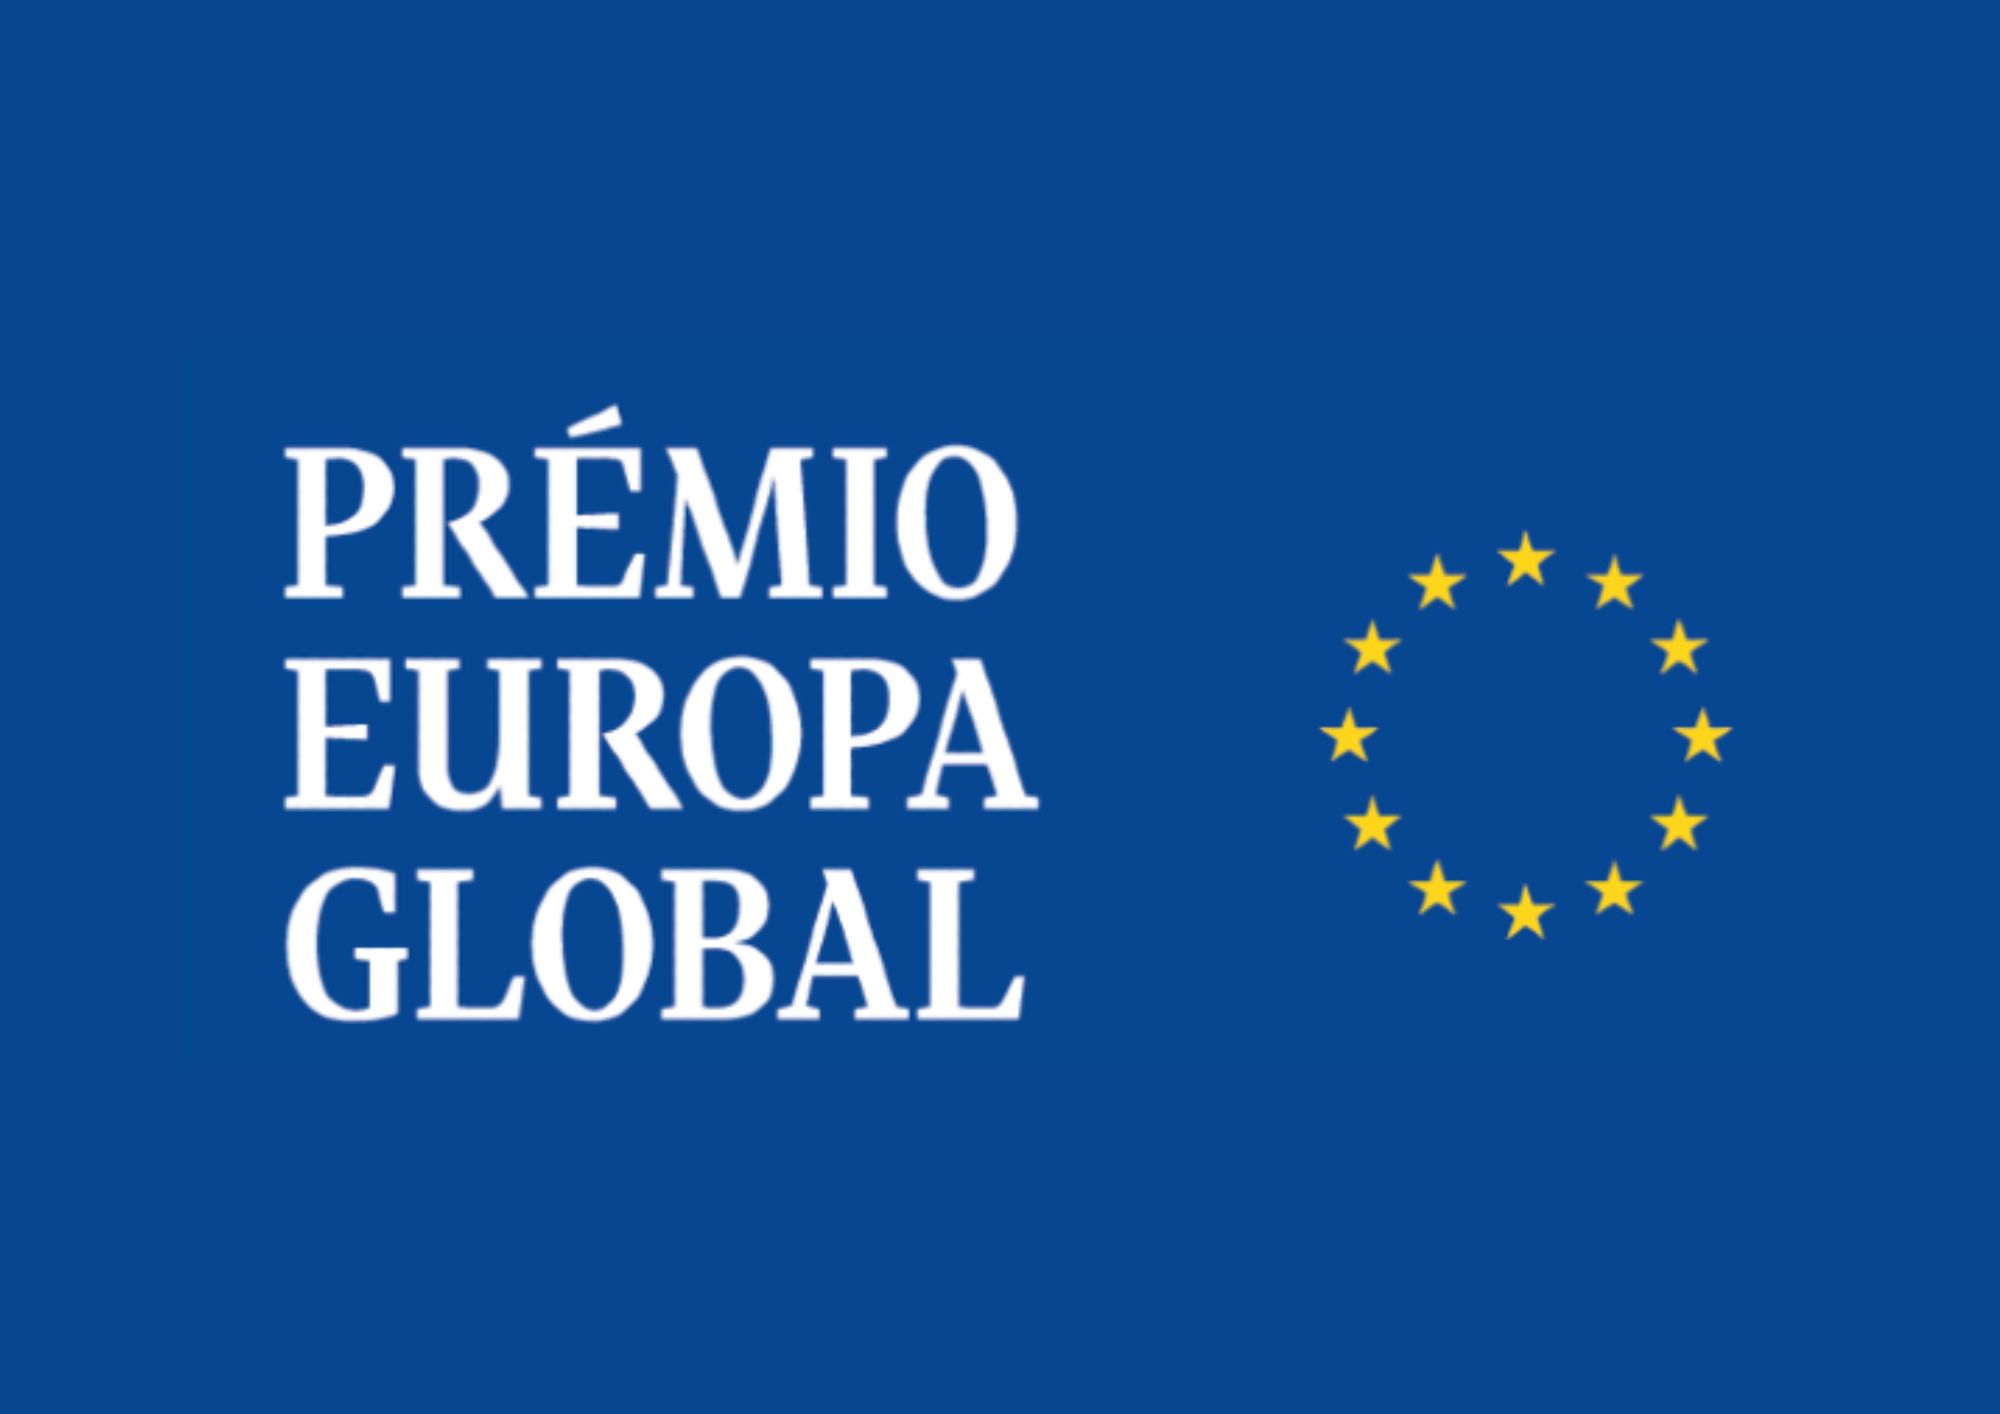 Prémio Europa Global, para o melhor ensaio sobre o futuro estratégico da União Europeia, destinado a doutorandos e mestrandos